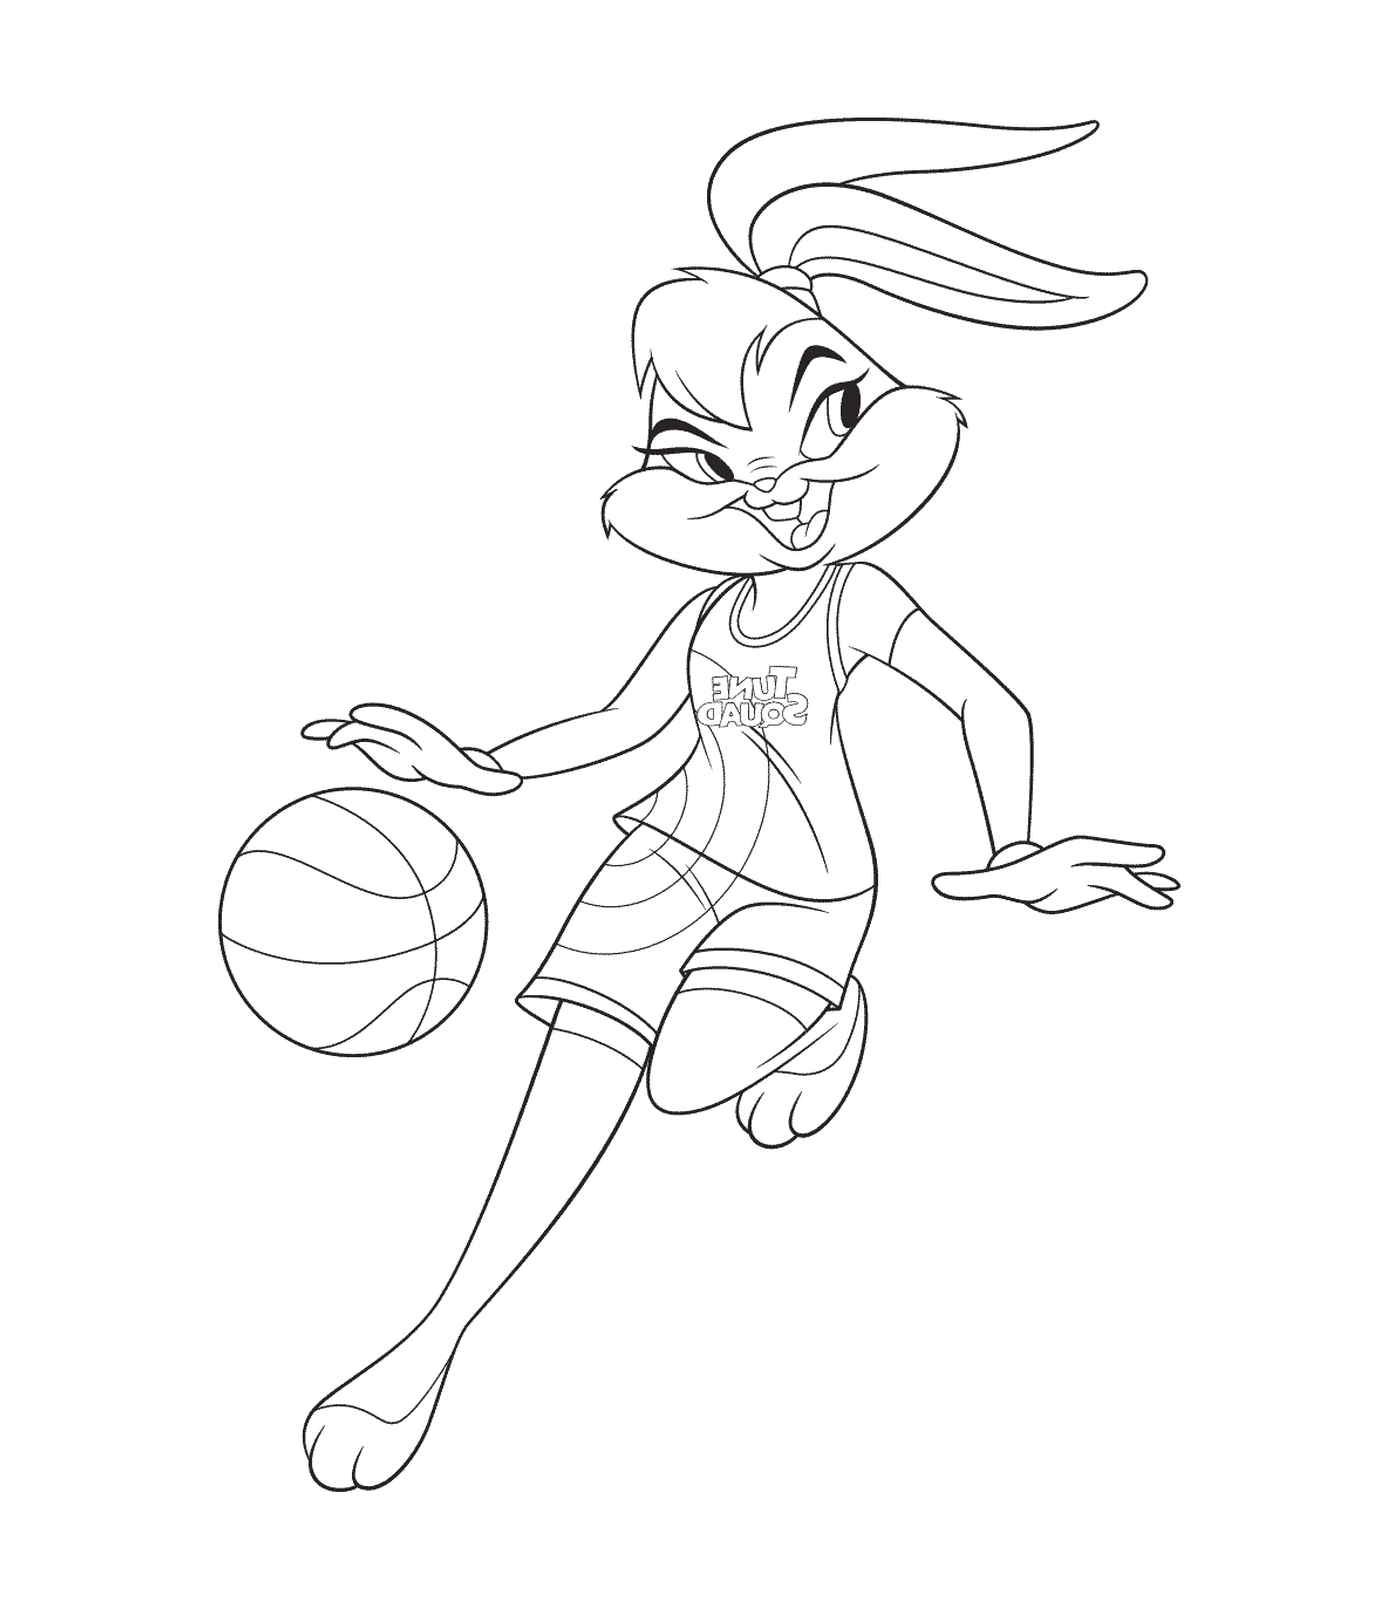  Kaninchen, die Basketball spielen 